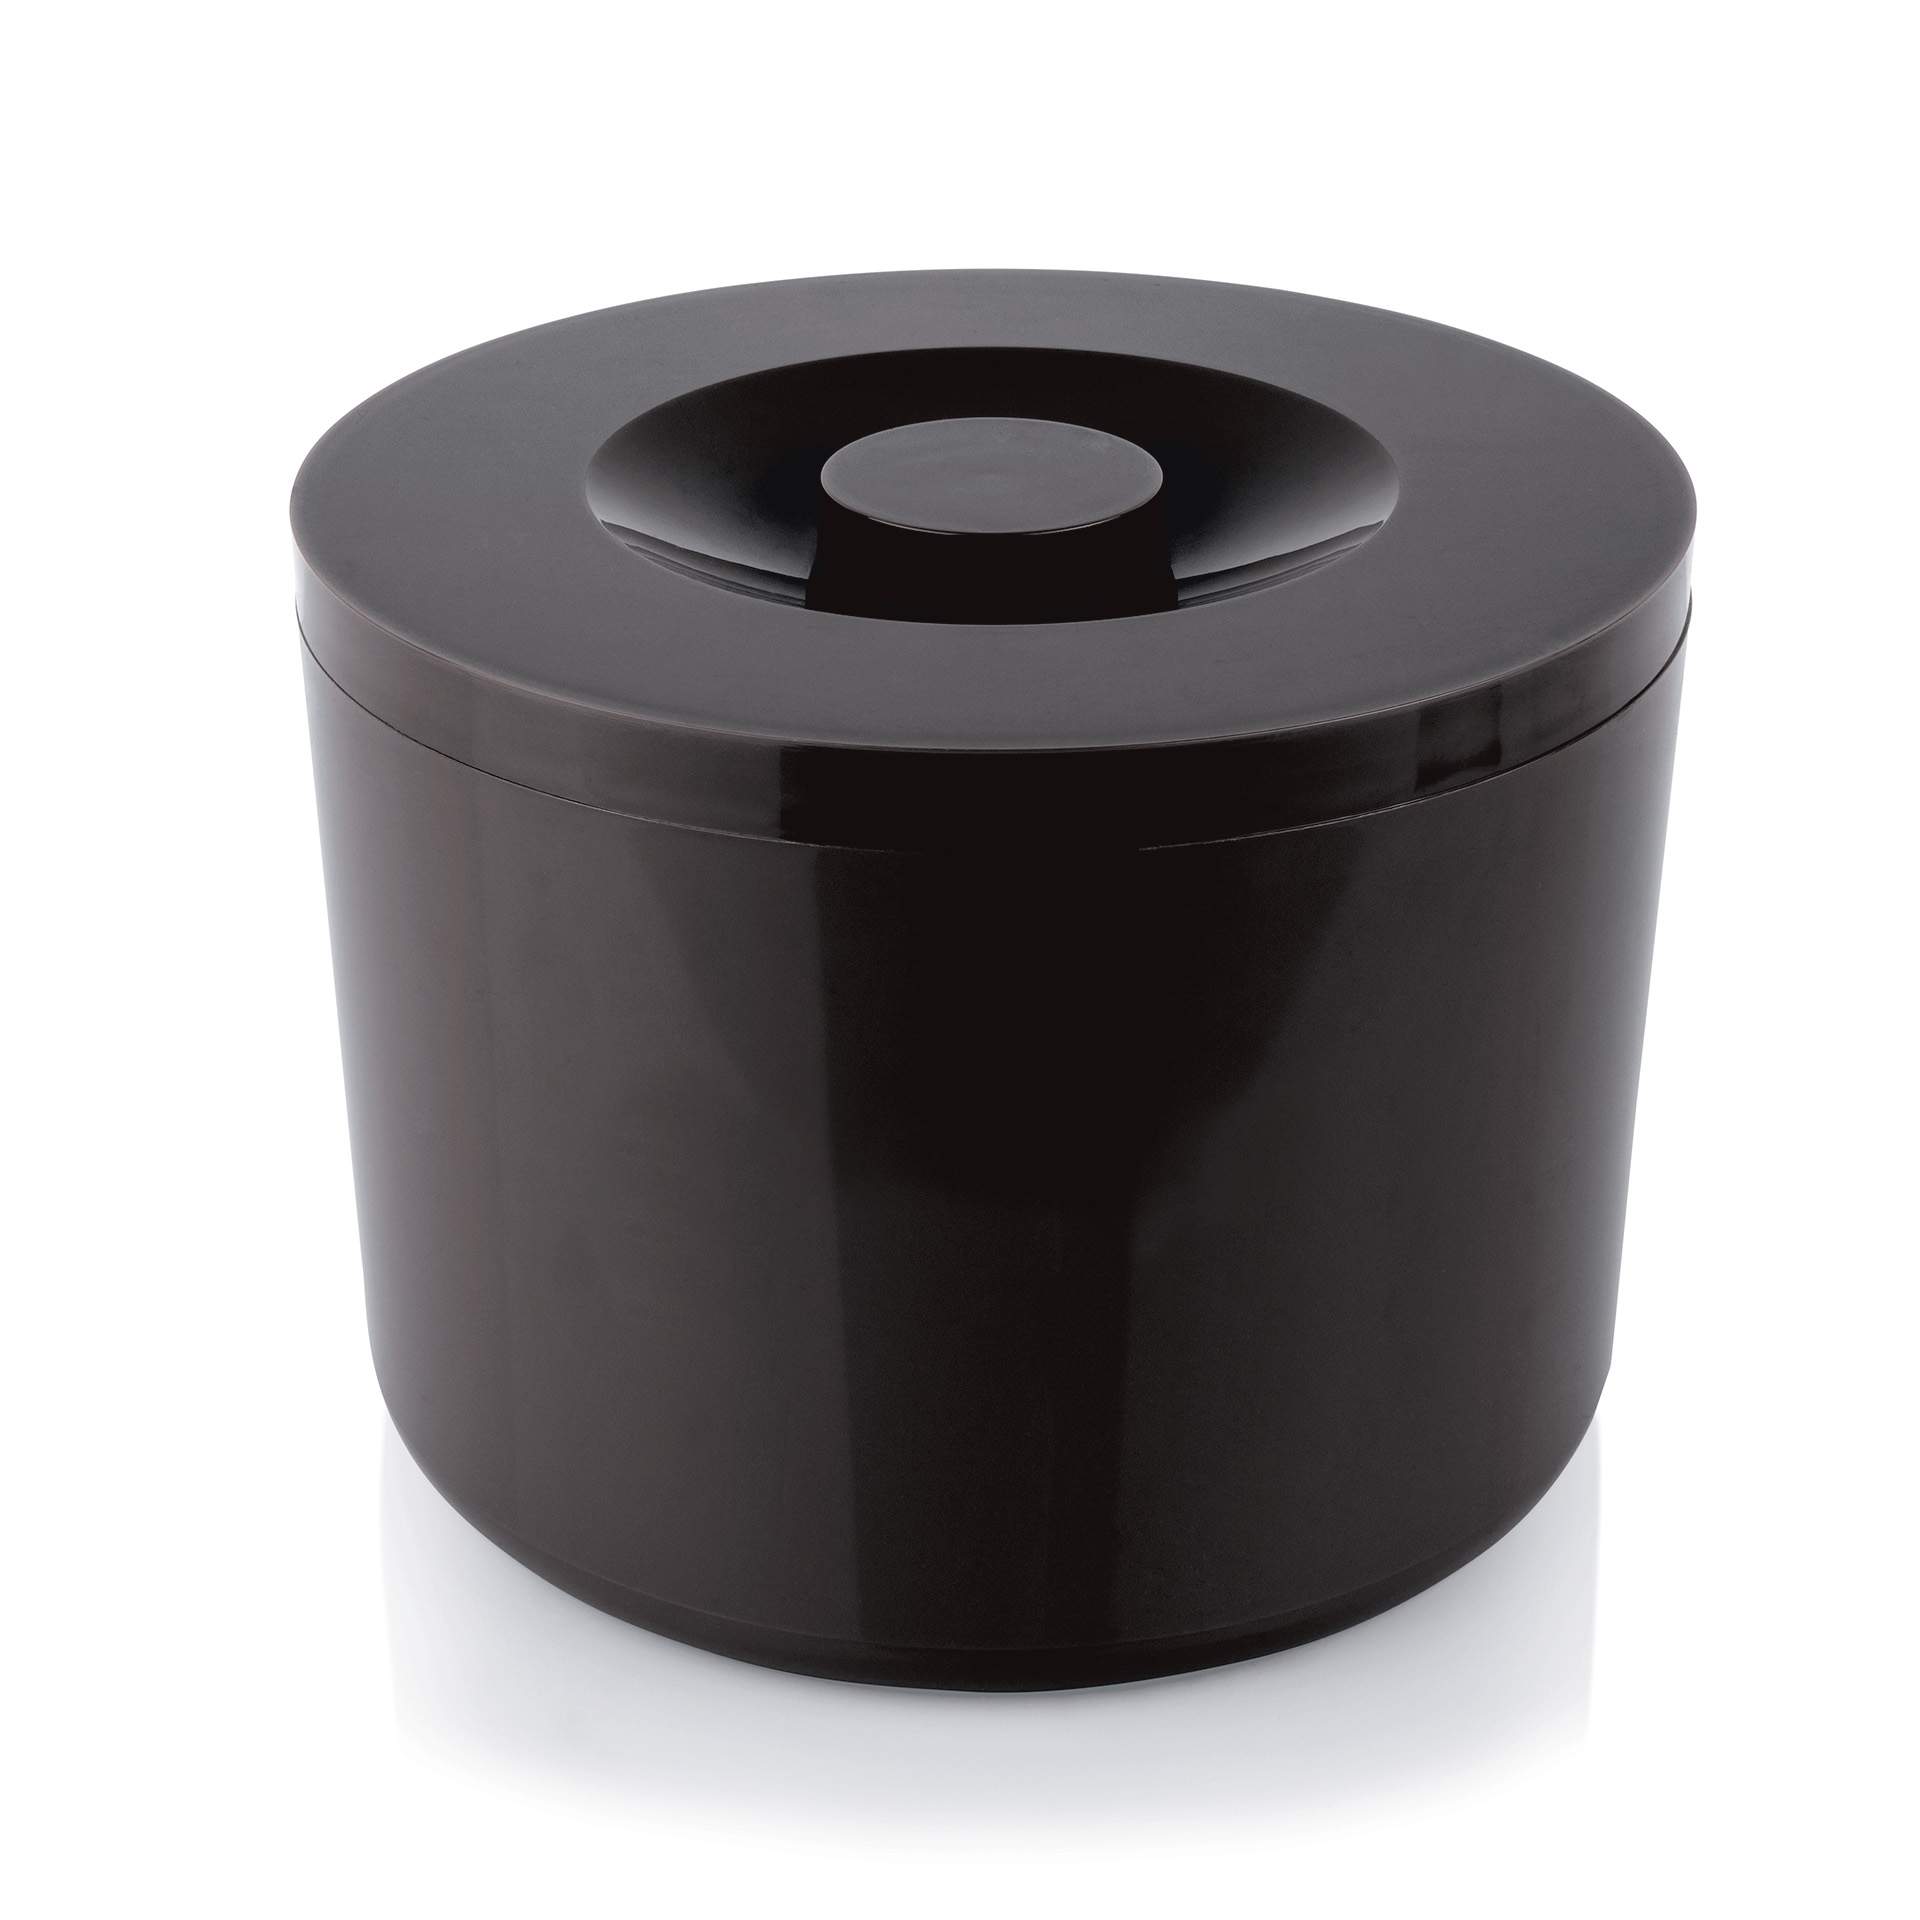 Eiseimer - doppelwandig - schwarz - rund - Abm. 22 cm - Ø 29 cm - Inhalt 10,0 l - Kunststoff - 3768100-A